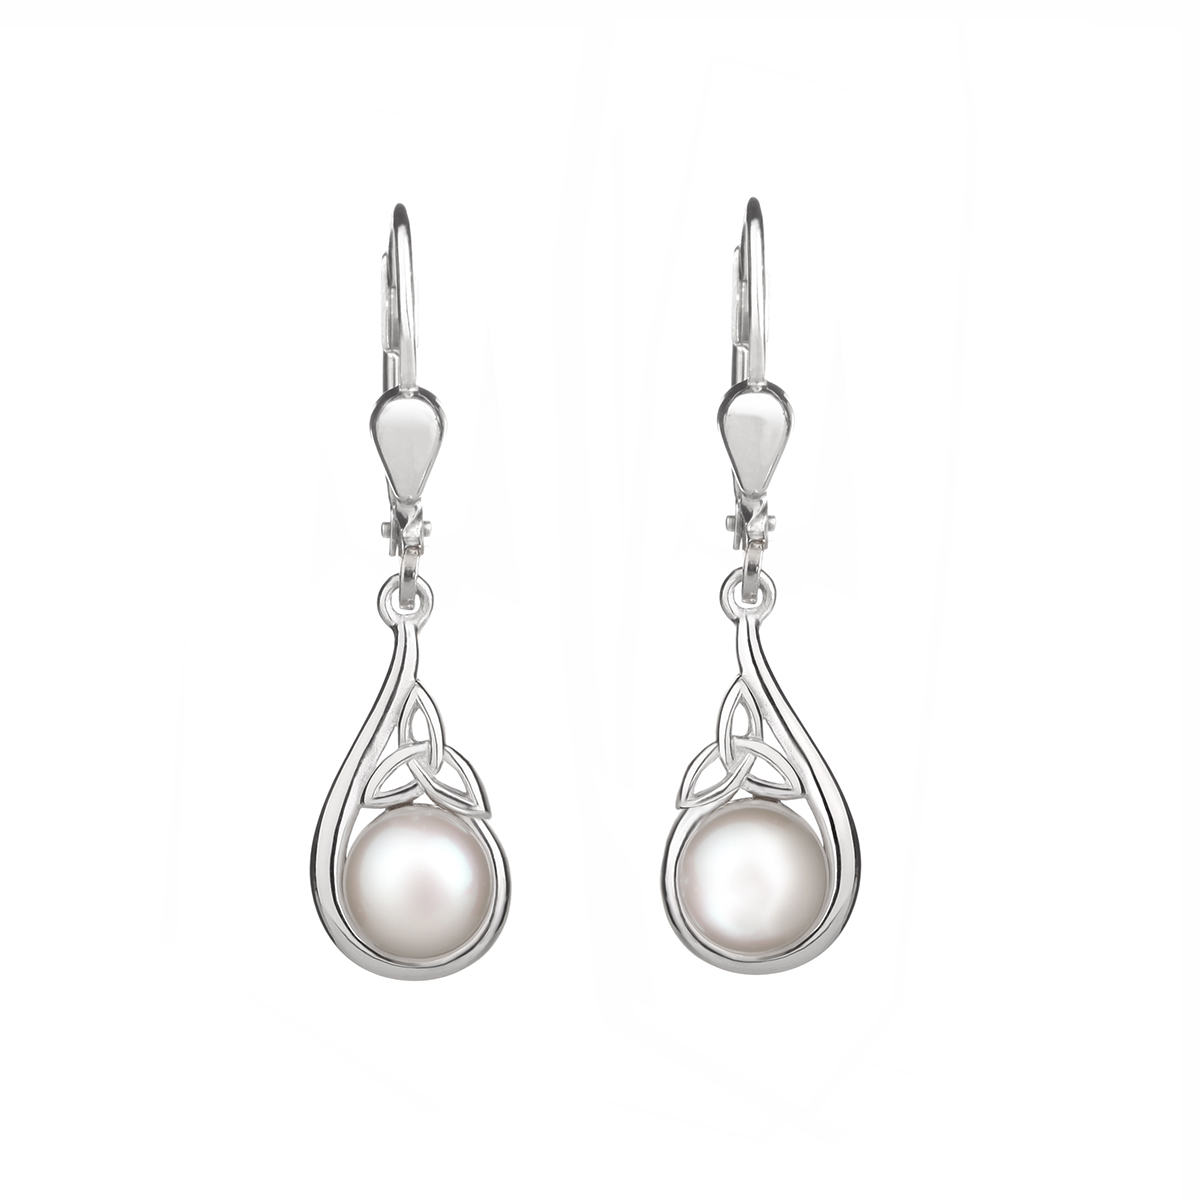 Trinity Pearl Ohrhänger - Sterling Silber mit Perlen - handgefertigt in Irland